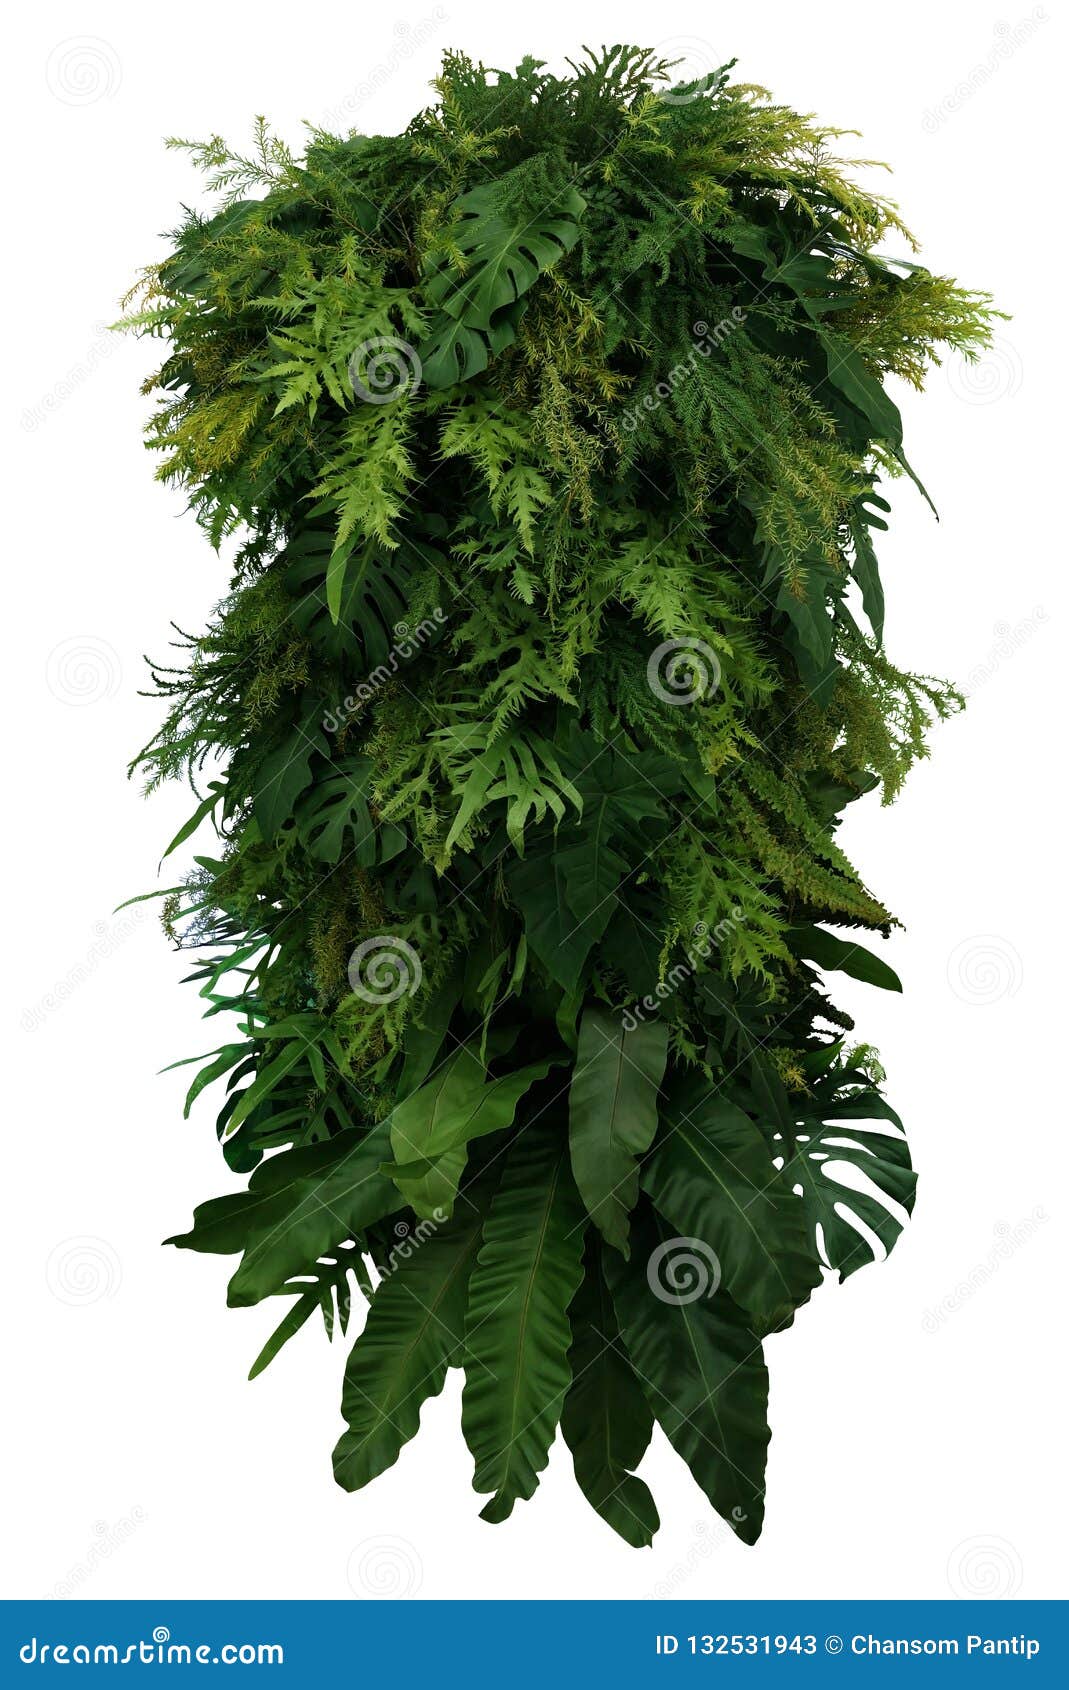 tropical leaves foliage plant bush floral arrangement, vertical